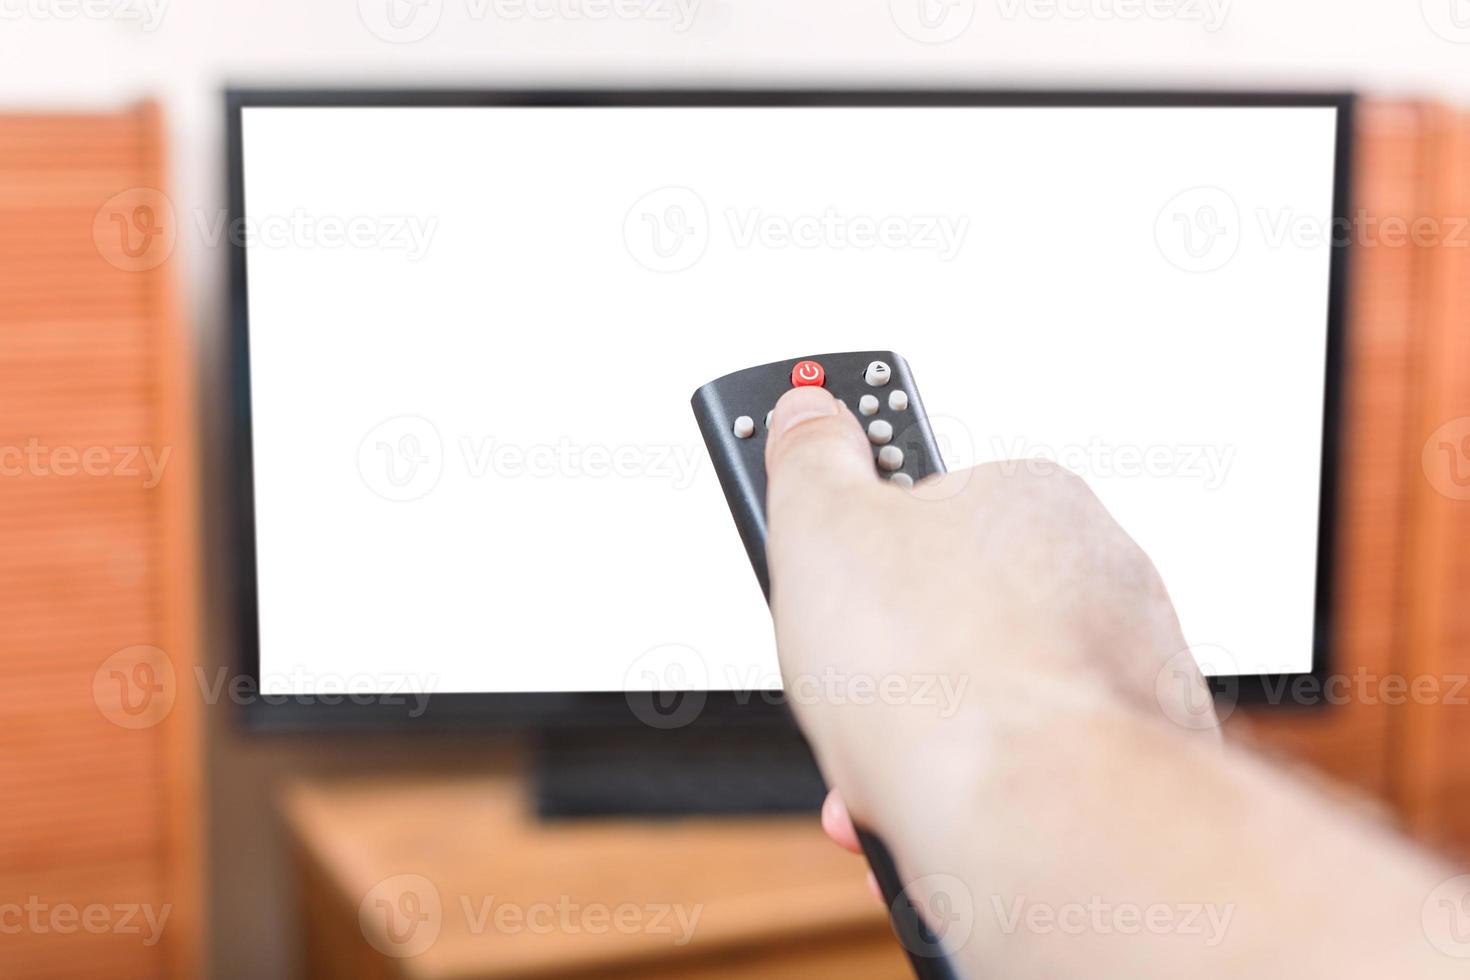 desligar tv com tela cortada por controle remoto foto